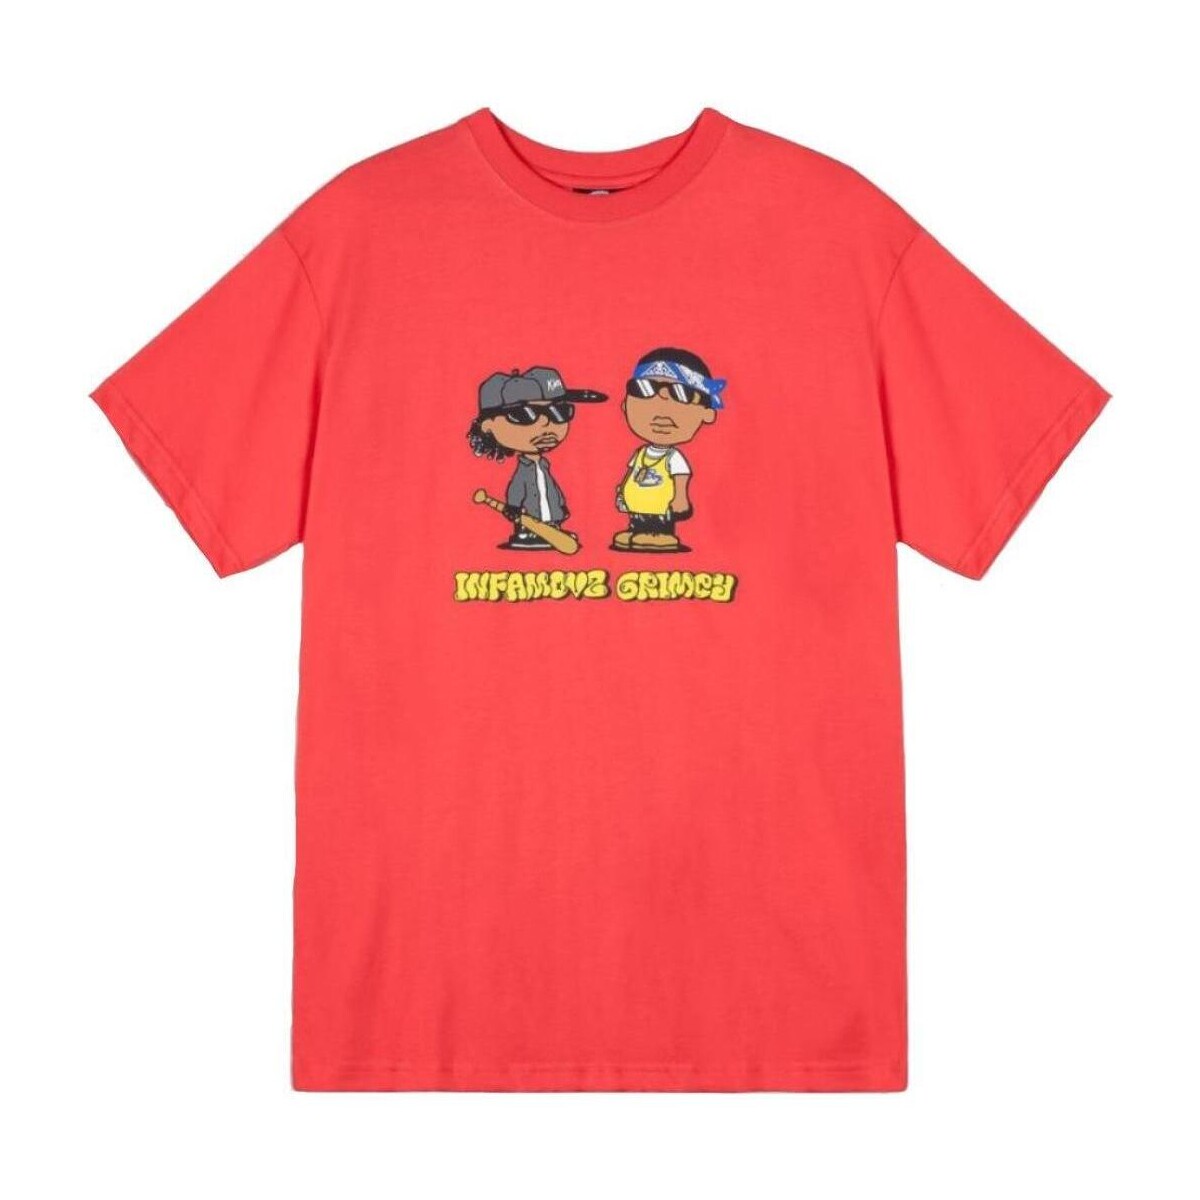 Abbigliamento T-shirt maniche corte Grimey  Rosso